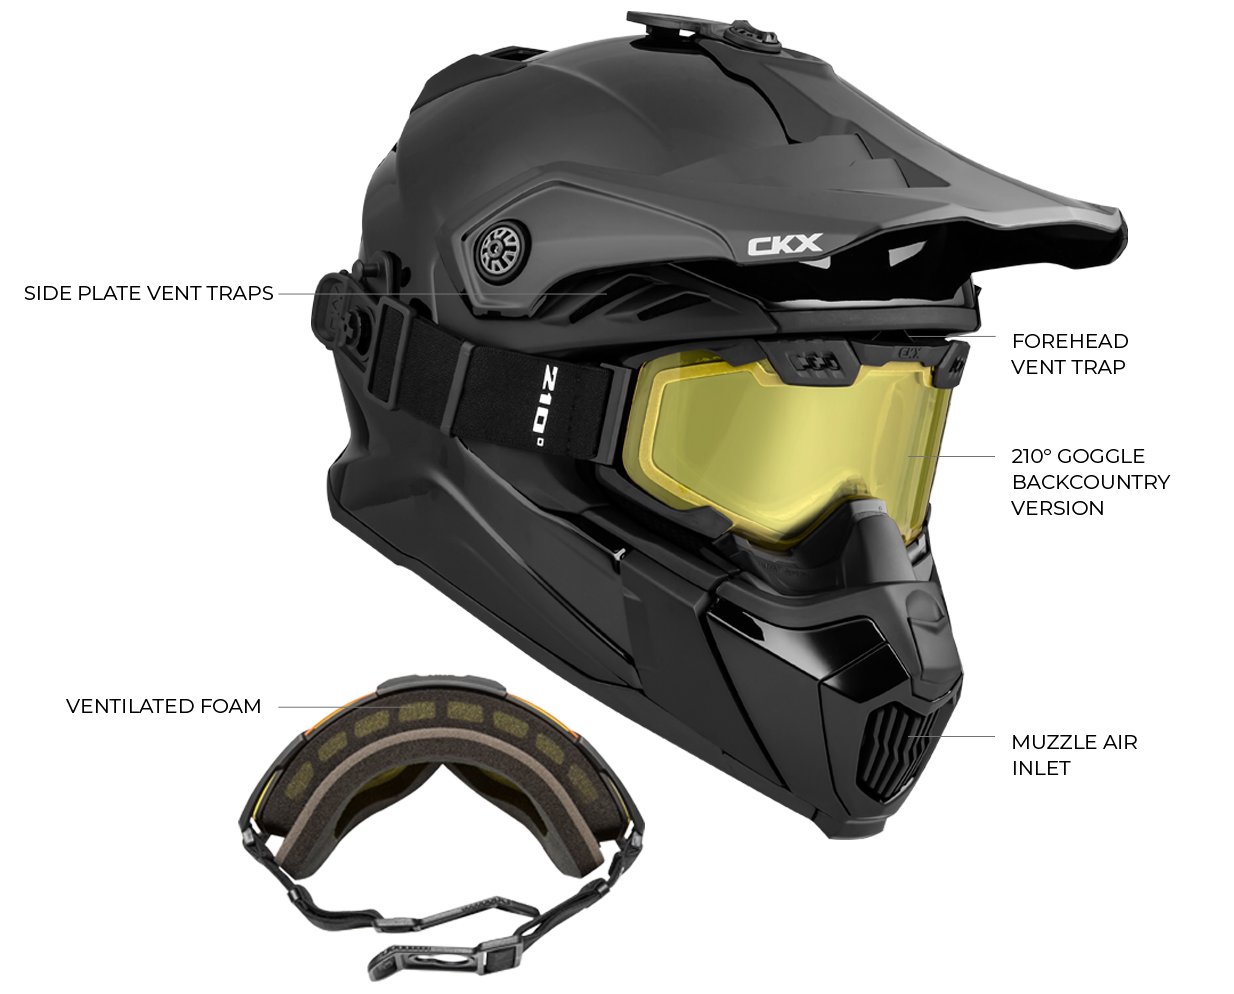 CKX Titan Airflow Helmet's features